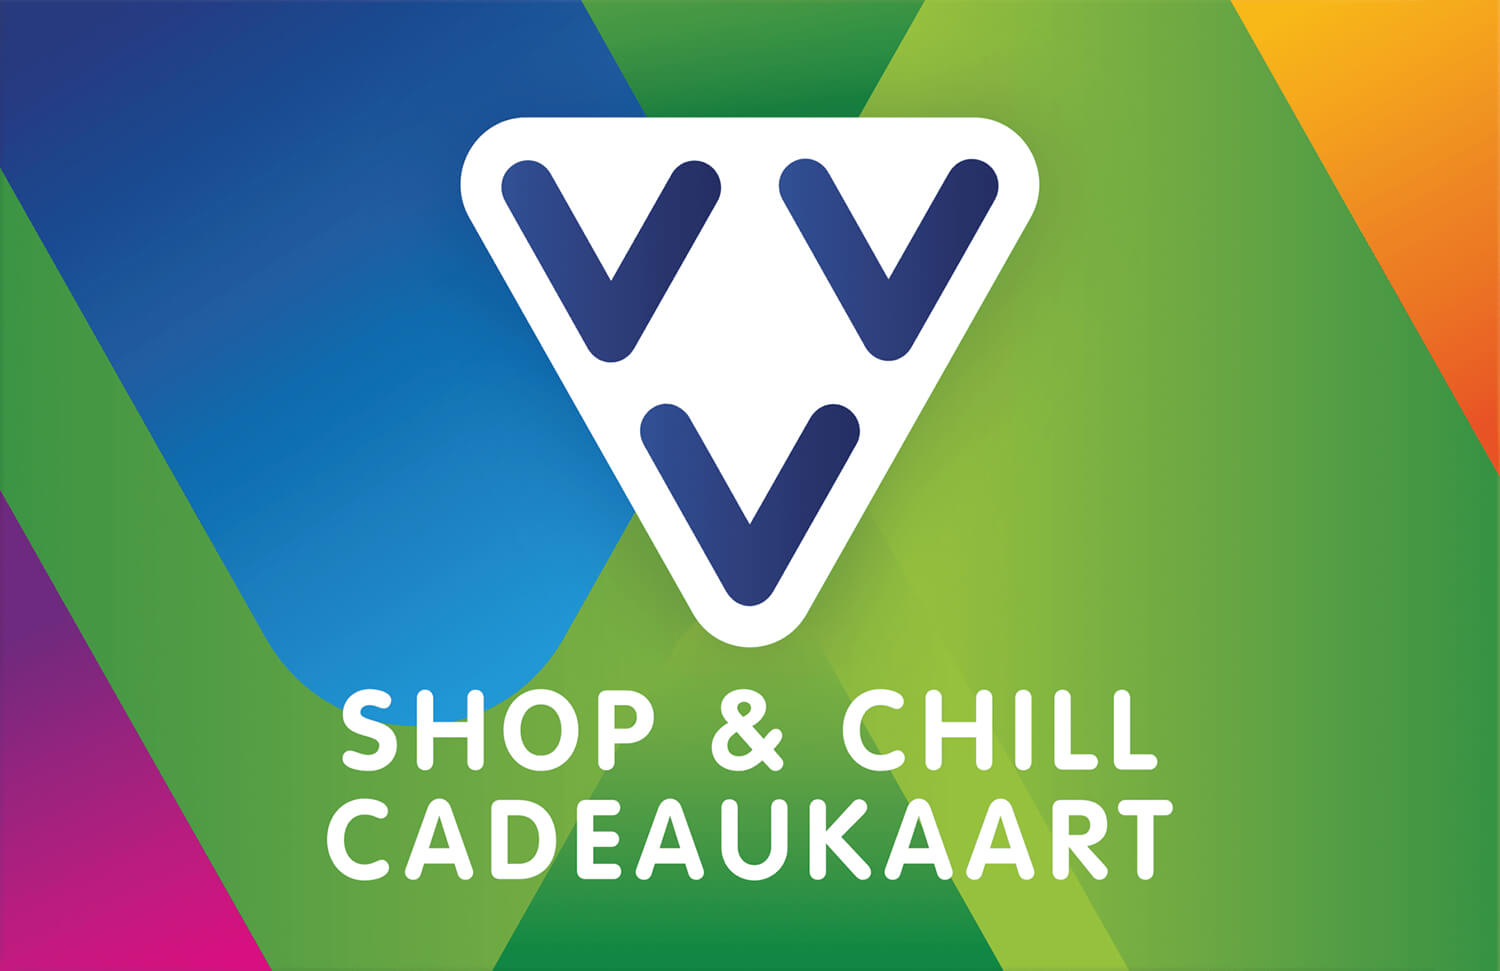 VVV Shop & Chill Cadeaukaart